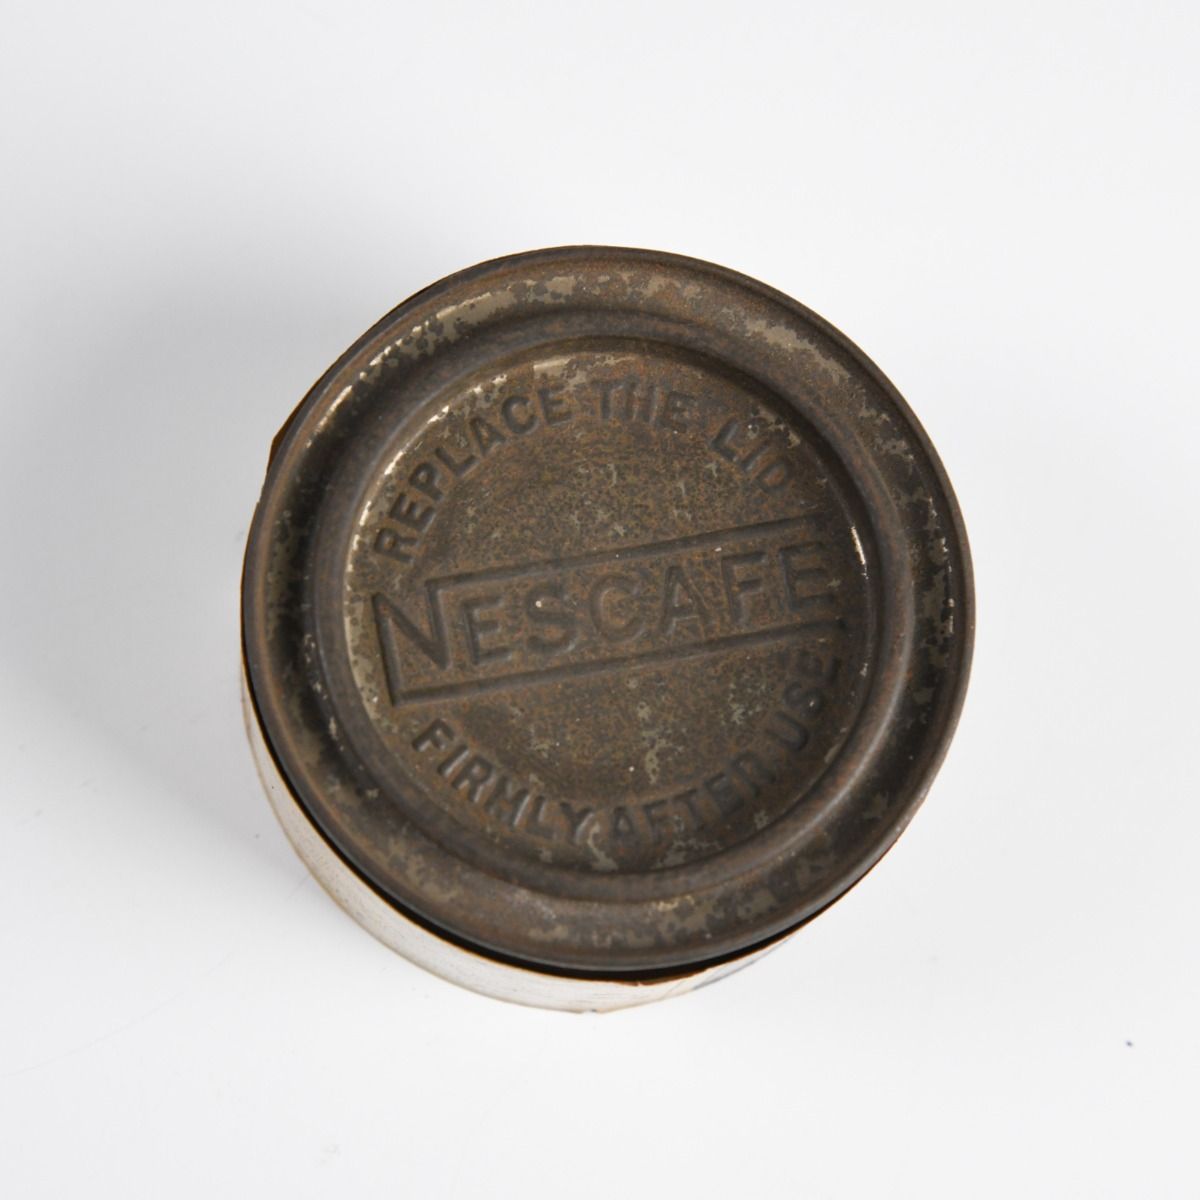 Vintage Nescafe Coffee Tin